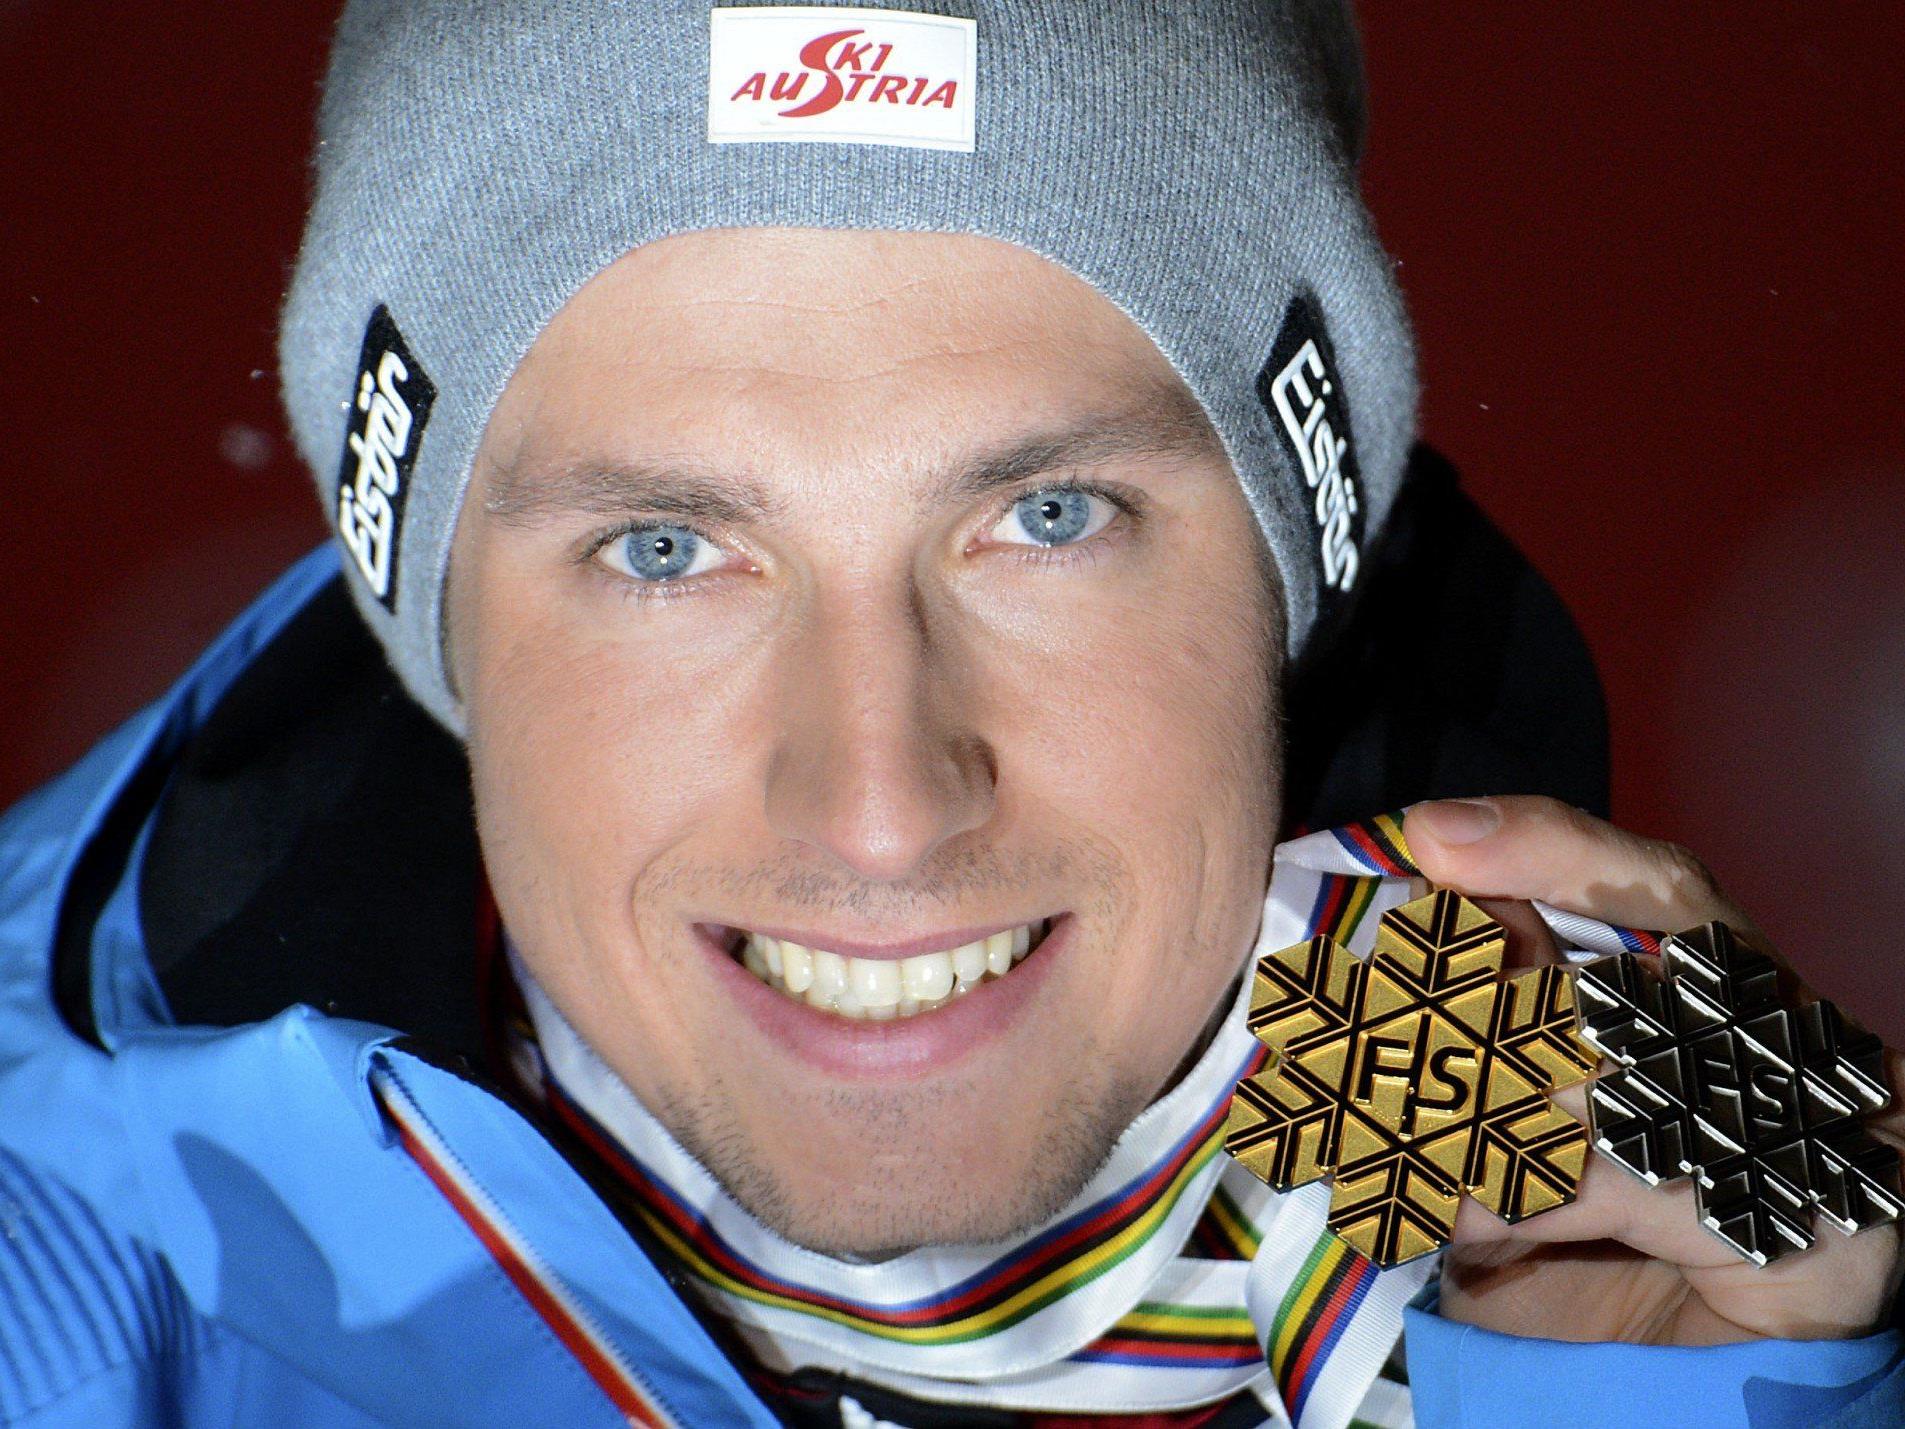 Marcel Hirscher hat seine Medaille schon, den Slalom sieht er als Draufgabe. Viel hängt vom Rücken ab...